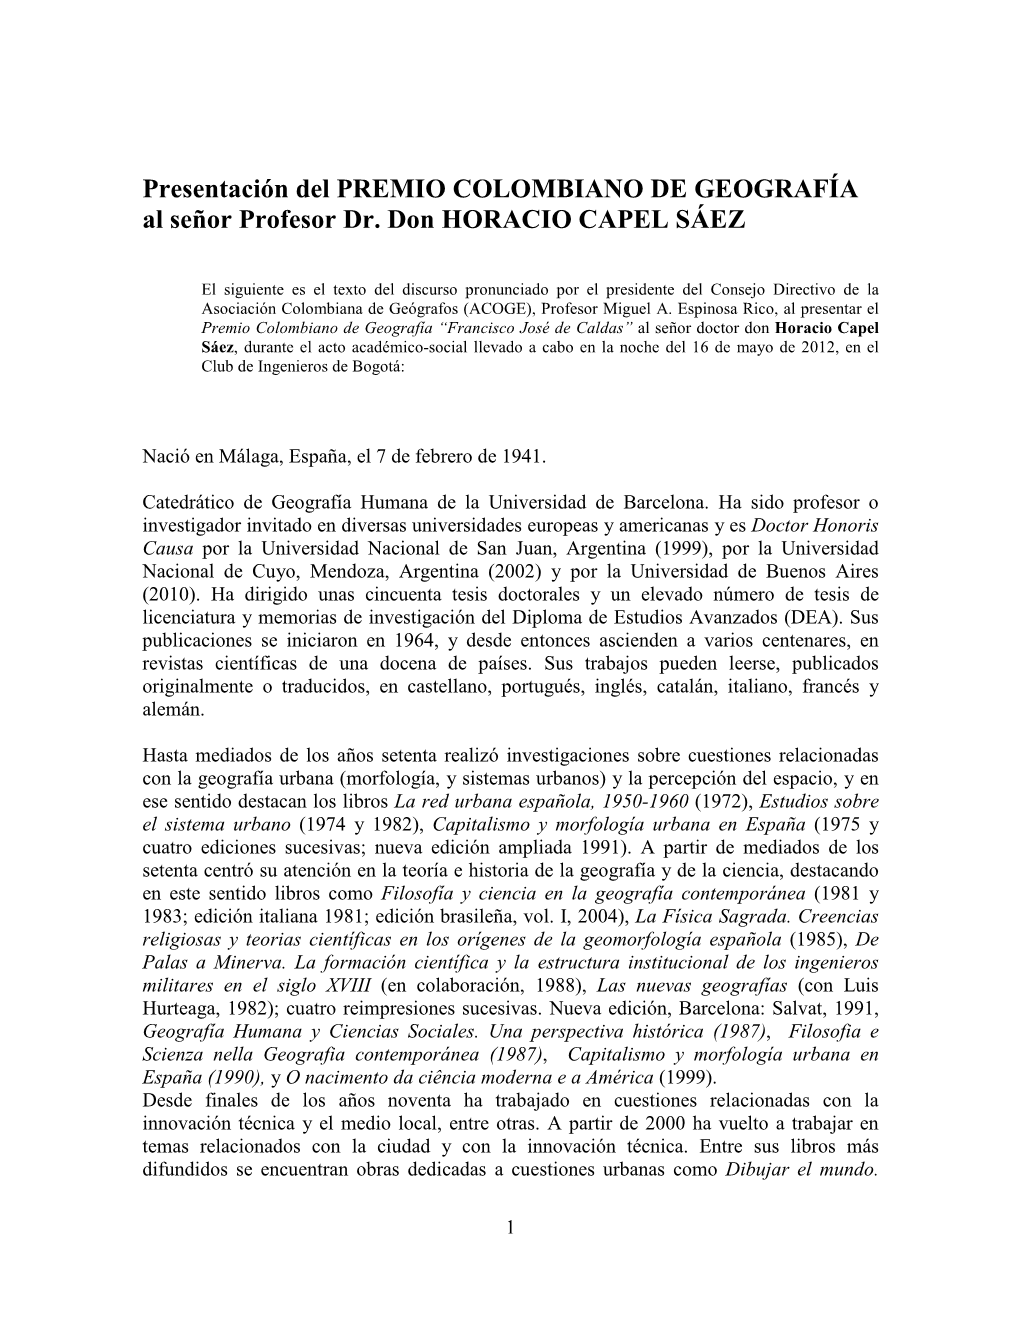 Presentación Del PREMIO COLOMBIANO DE GEOGRAFÍA Al Señor Profesor Dr